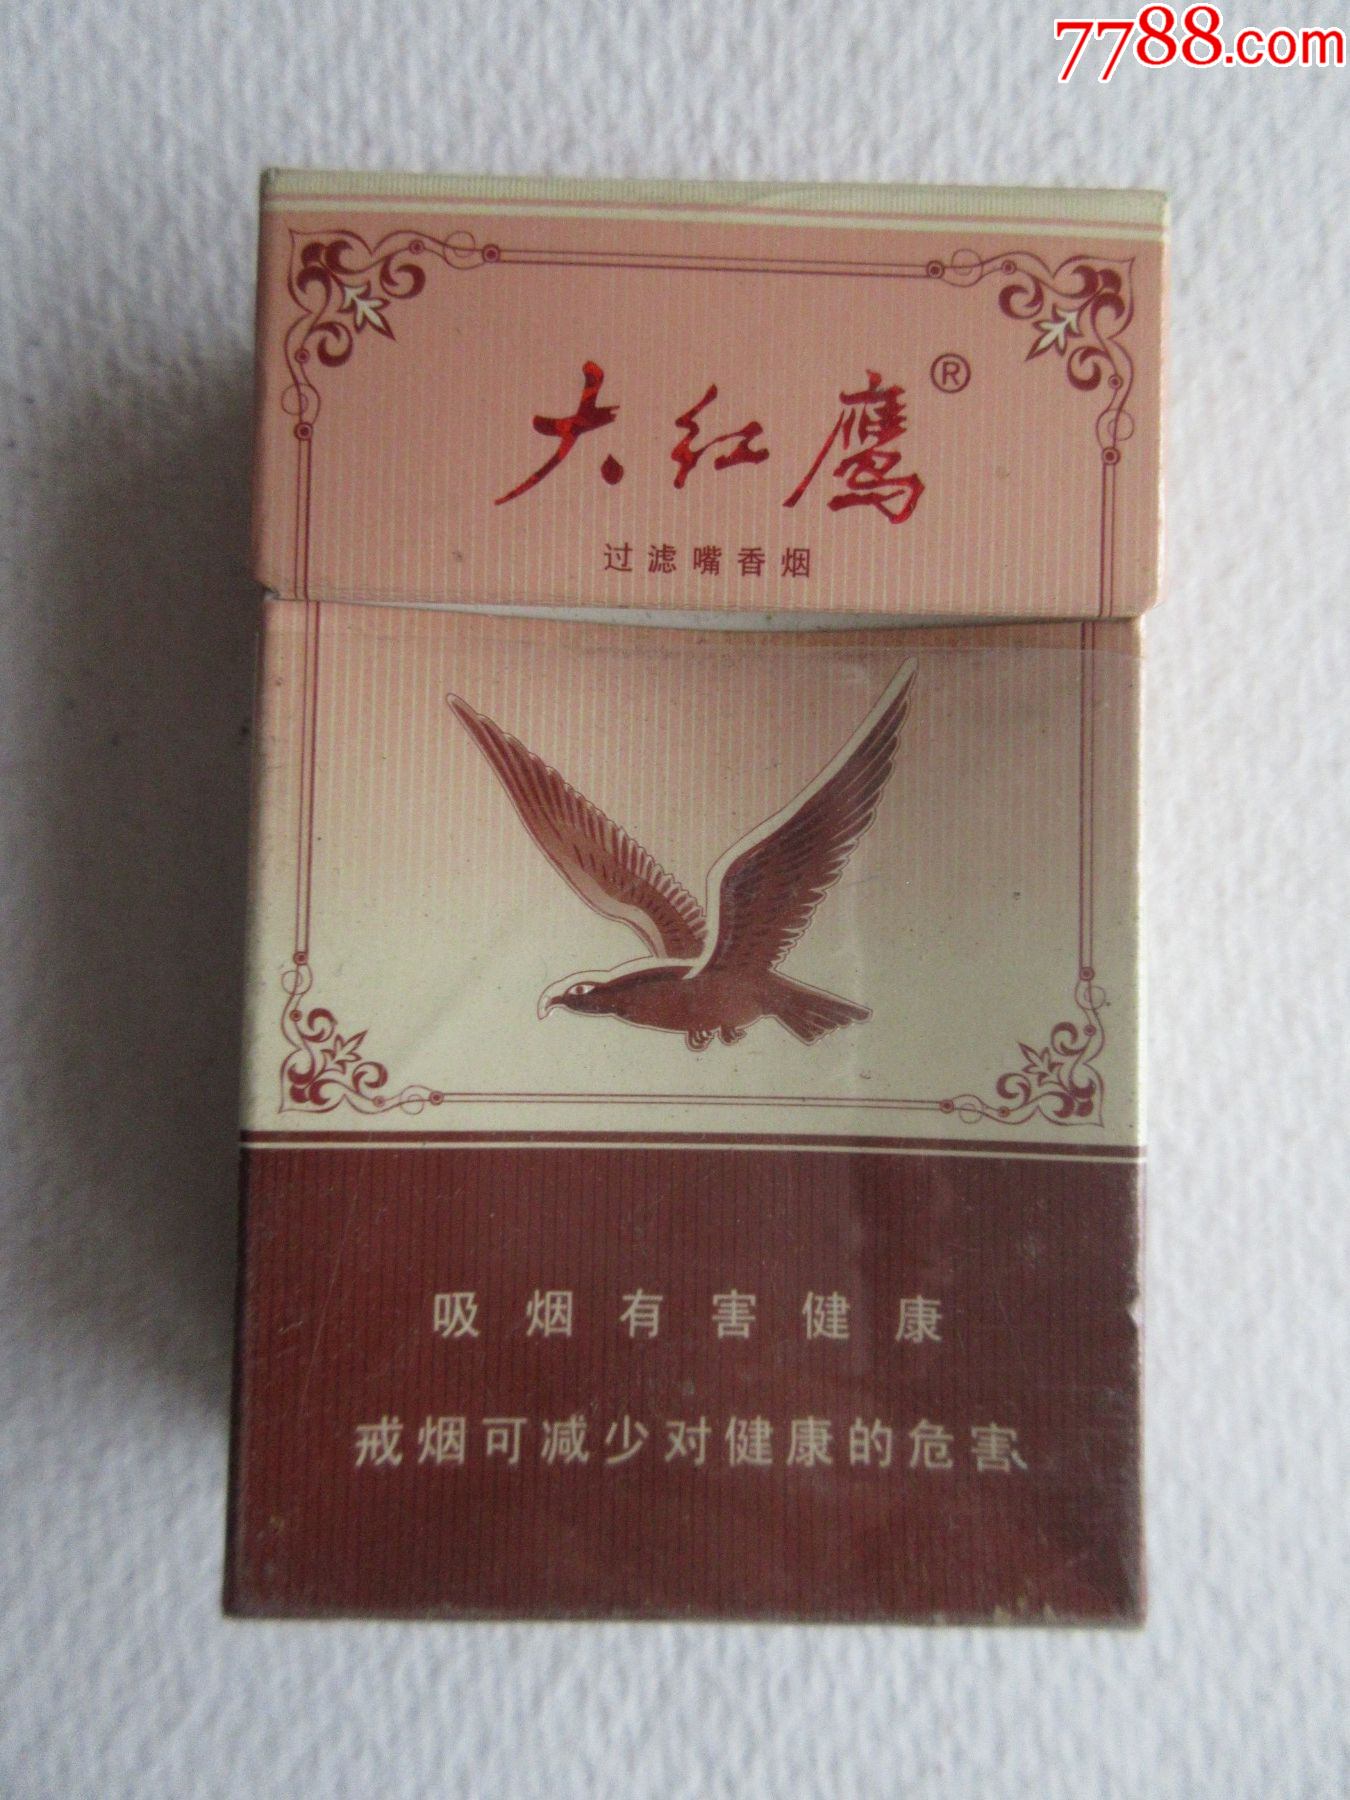 鹰牌香烟图片